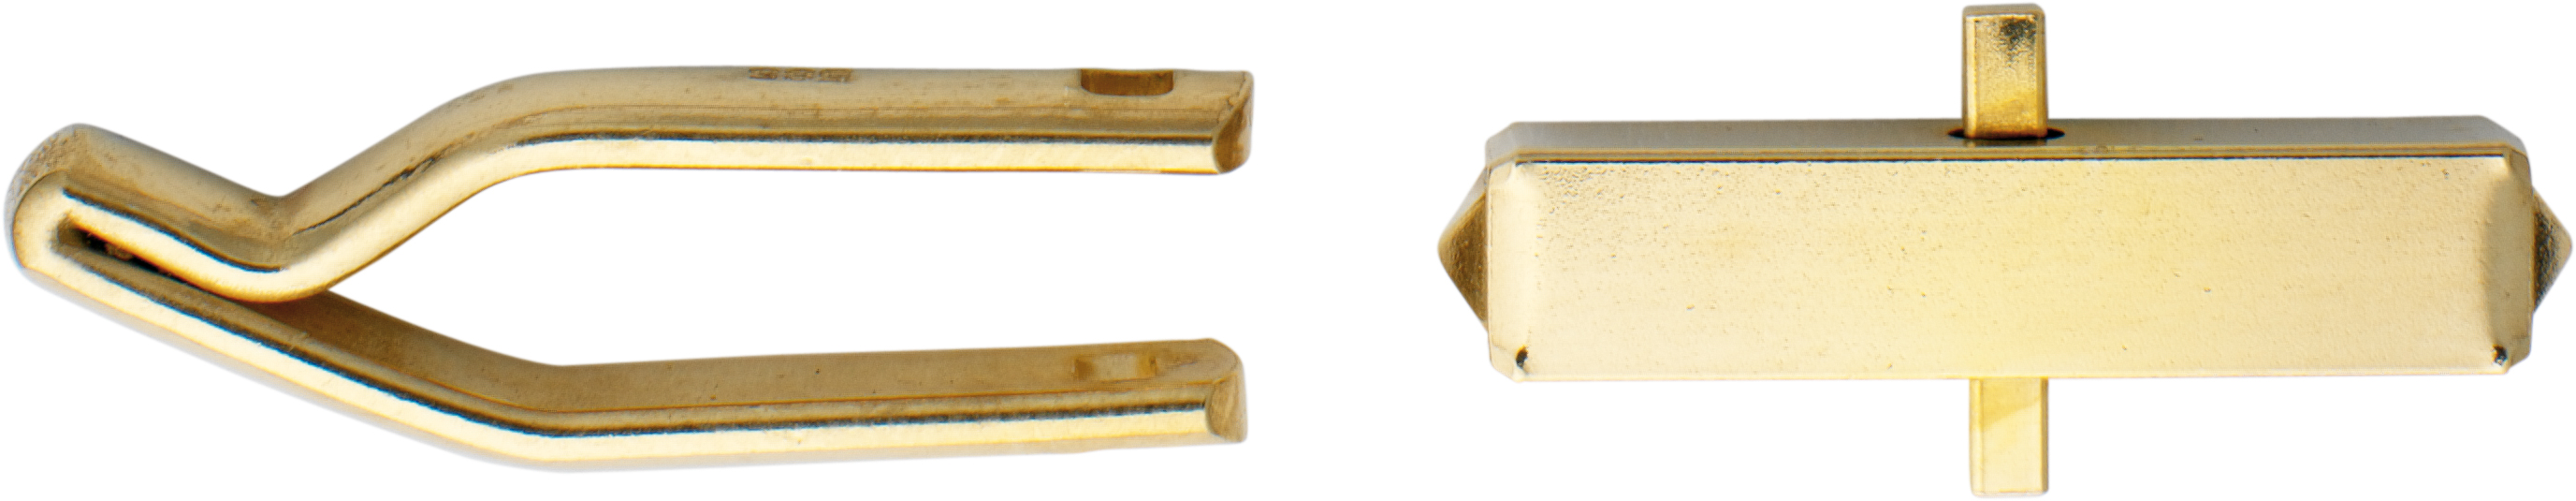 Cuff link mechanism gold 585/-Gg